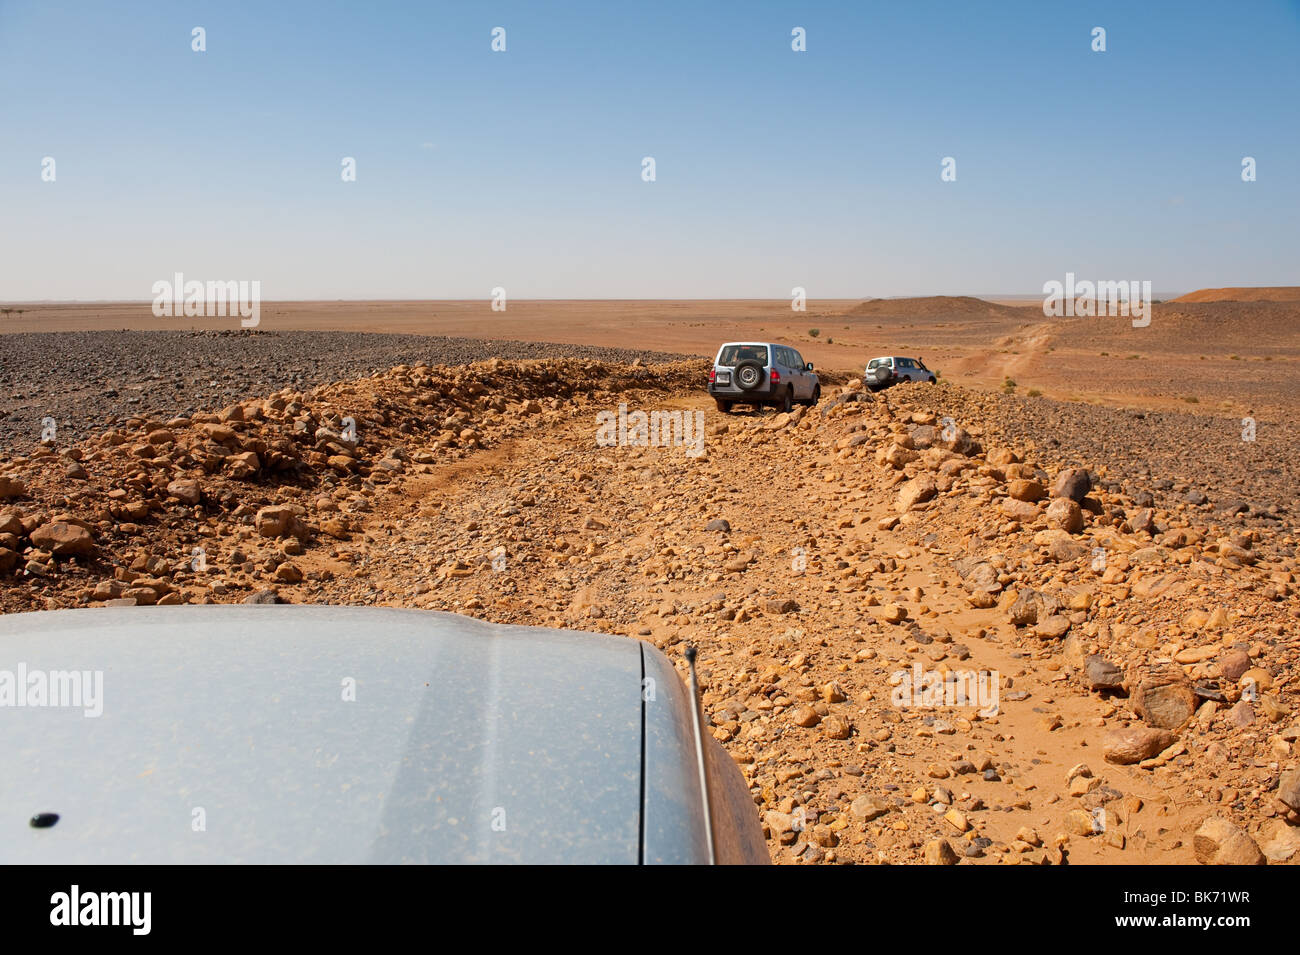 Si tratta di una immagine di un veicolo fuoristrada convoglio nel deserto. Foto Stock